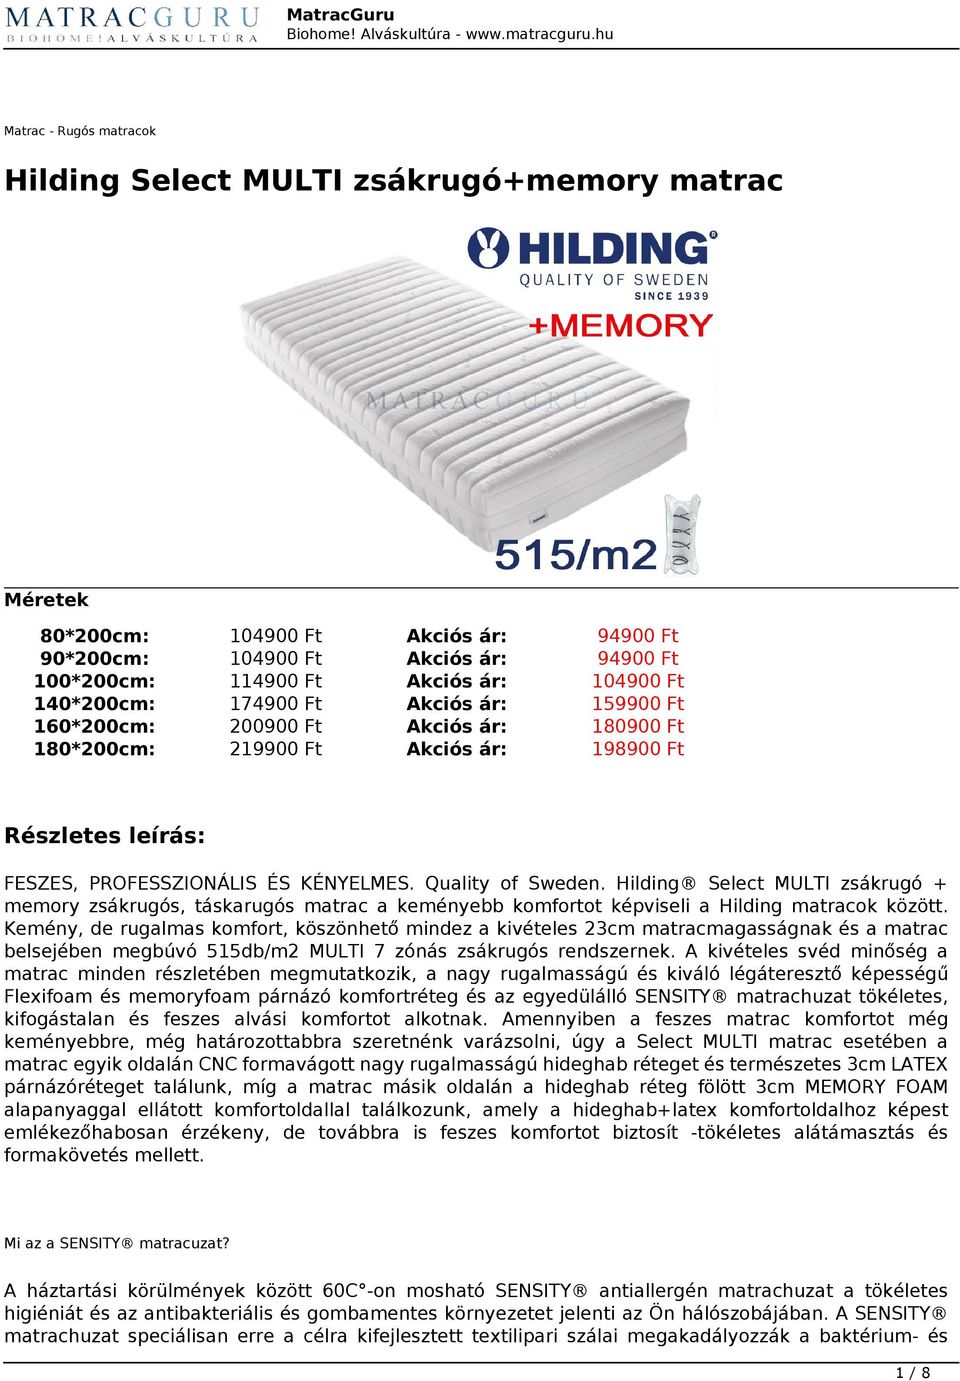 Hilding Select MULTI zsákrugó + memory zsákrugós, táskarugós matrac a keményebb komfortot képviseli a Hilding matracok között.